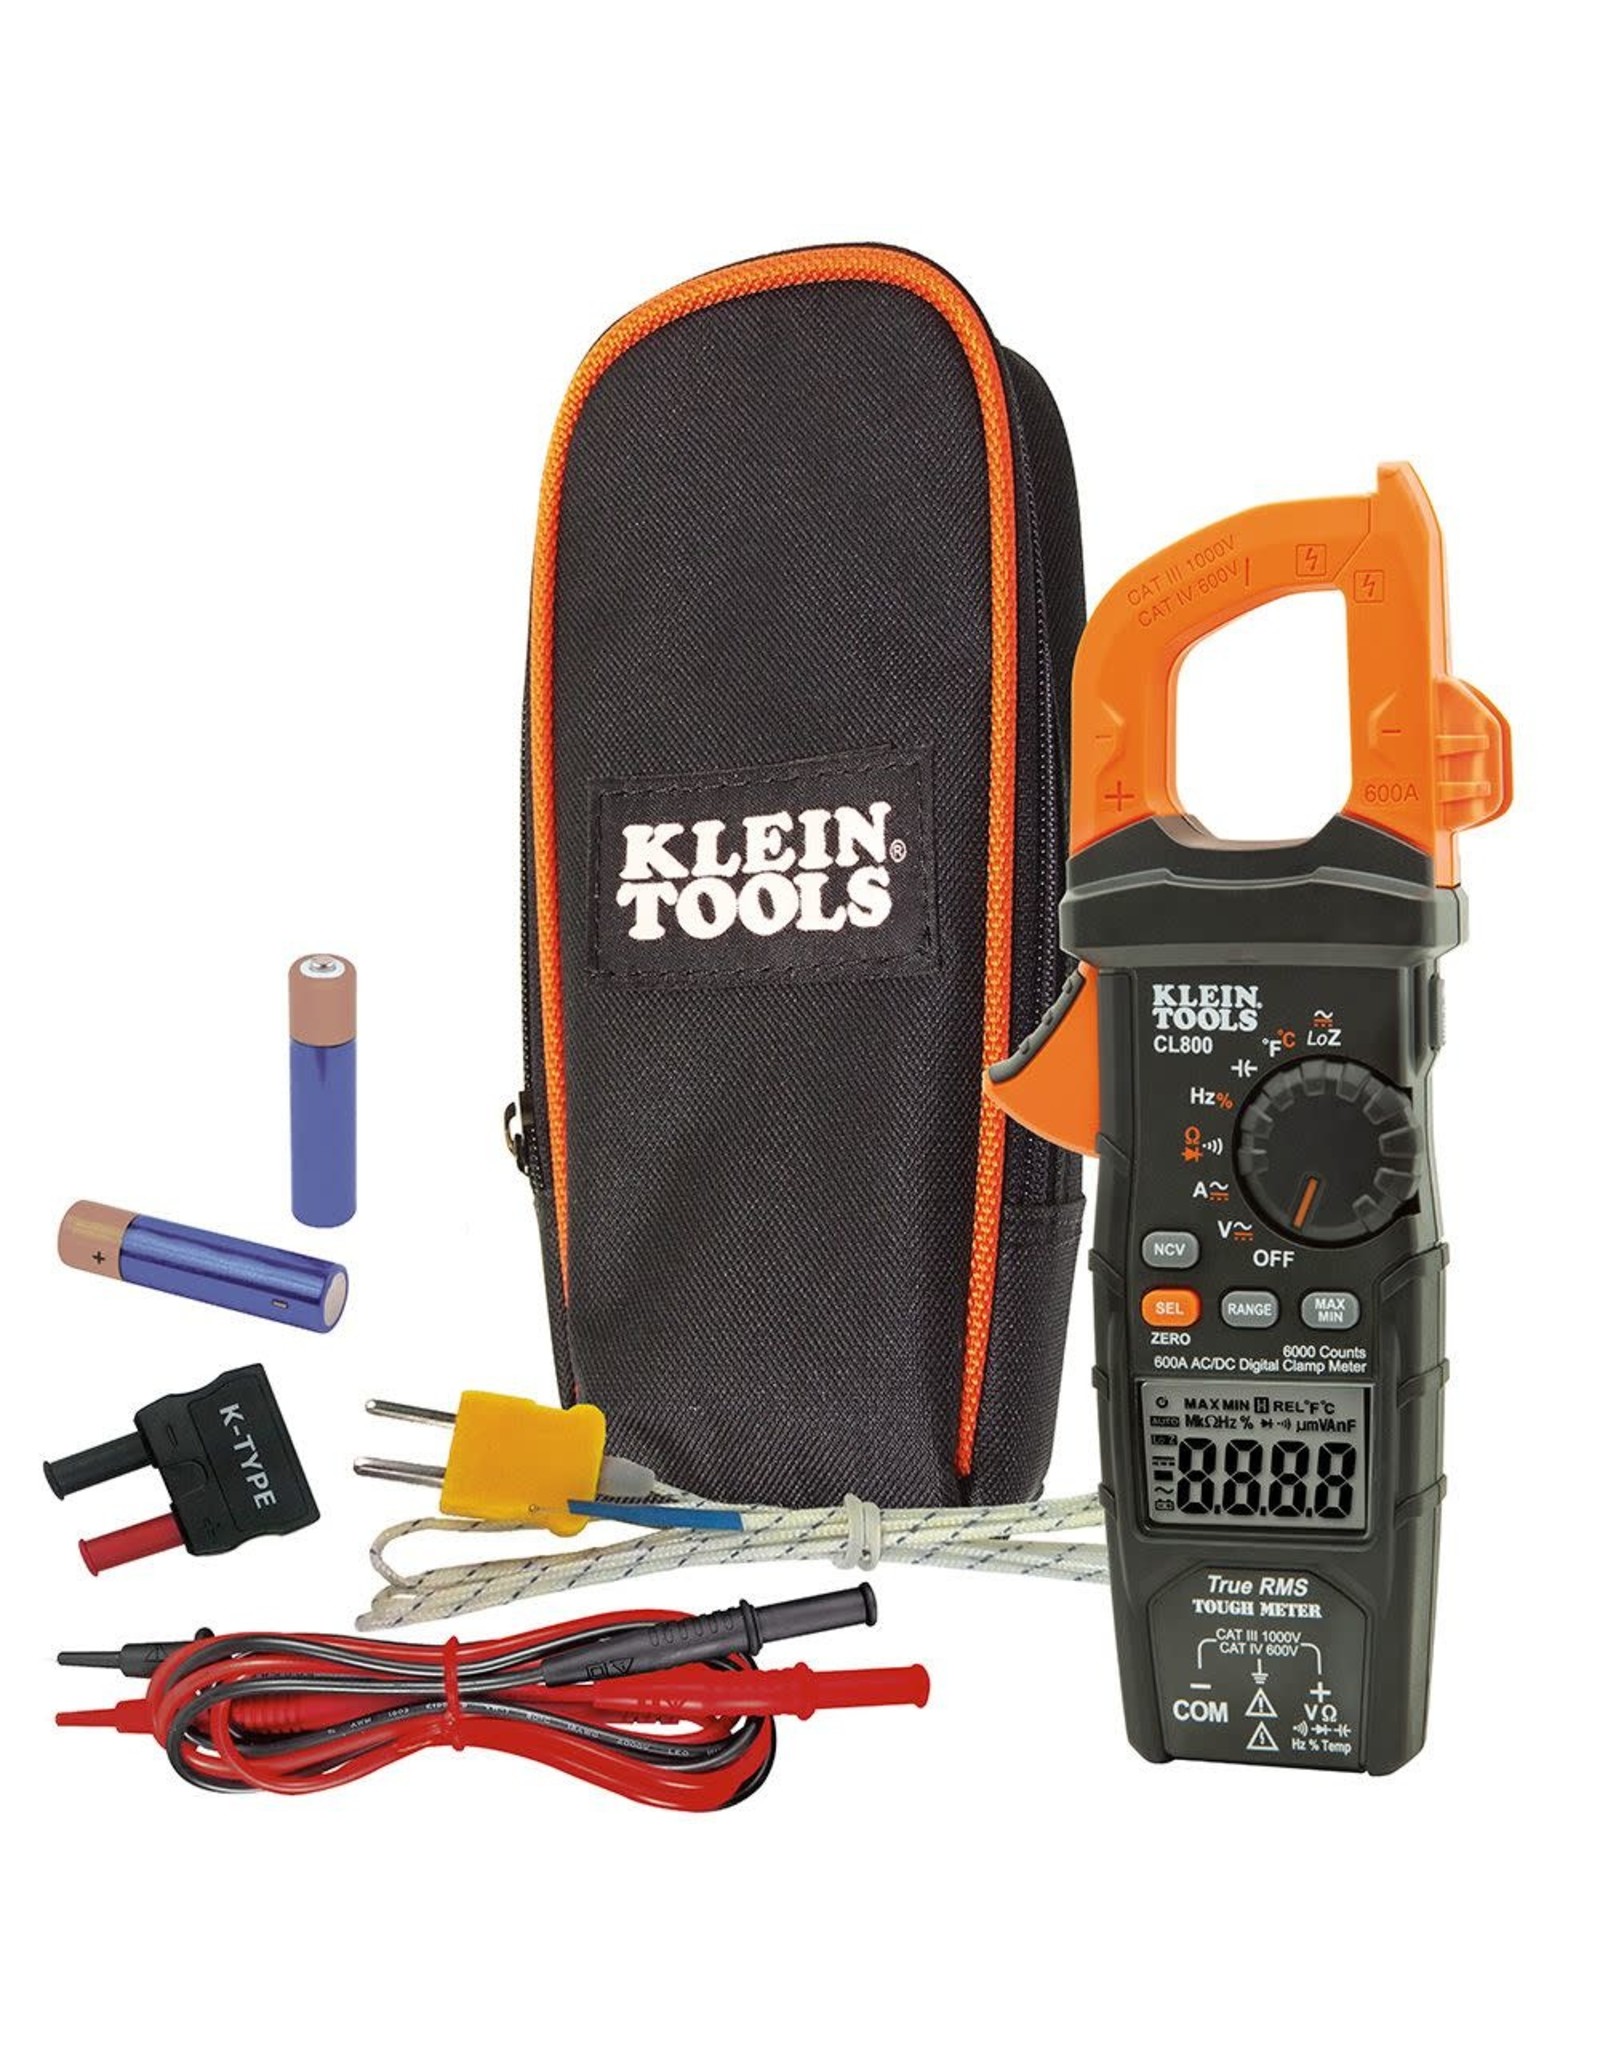 Klein Tools Klein Digital Clamp Meter, AC Auto-Range TRMS, Low Impedance (LoZ), Auto Off